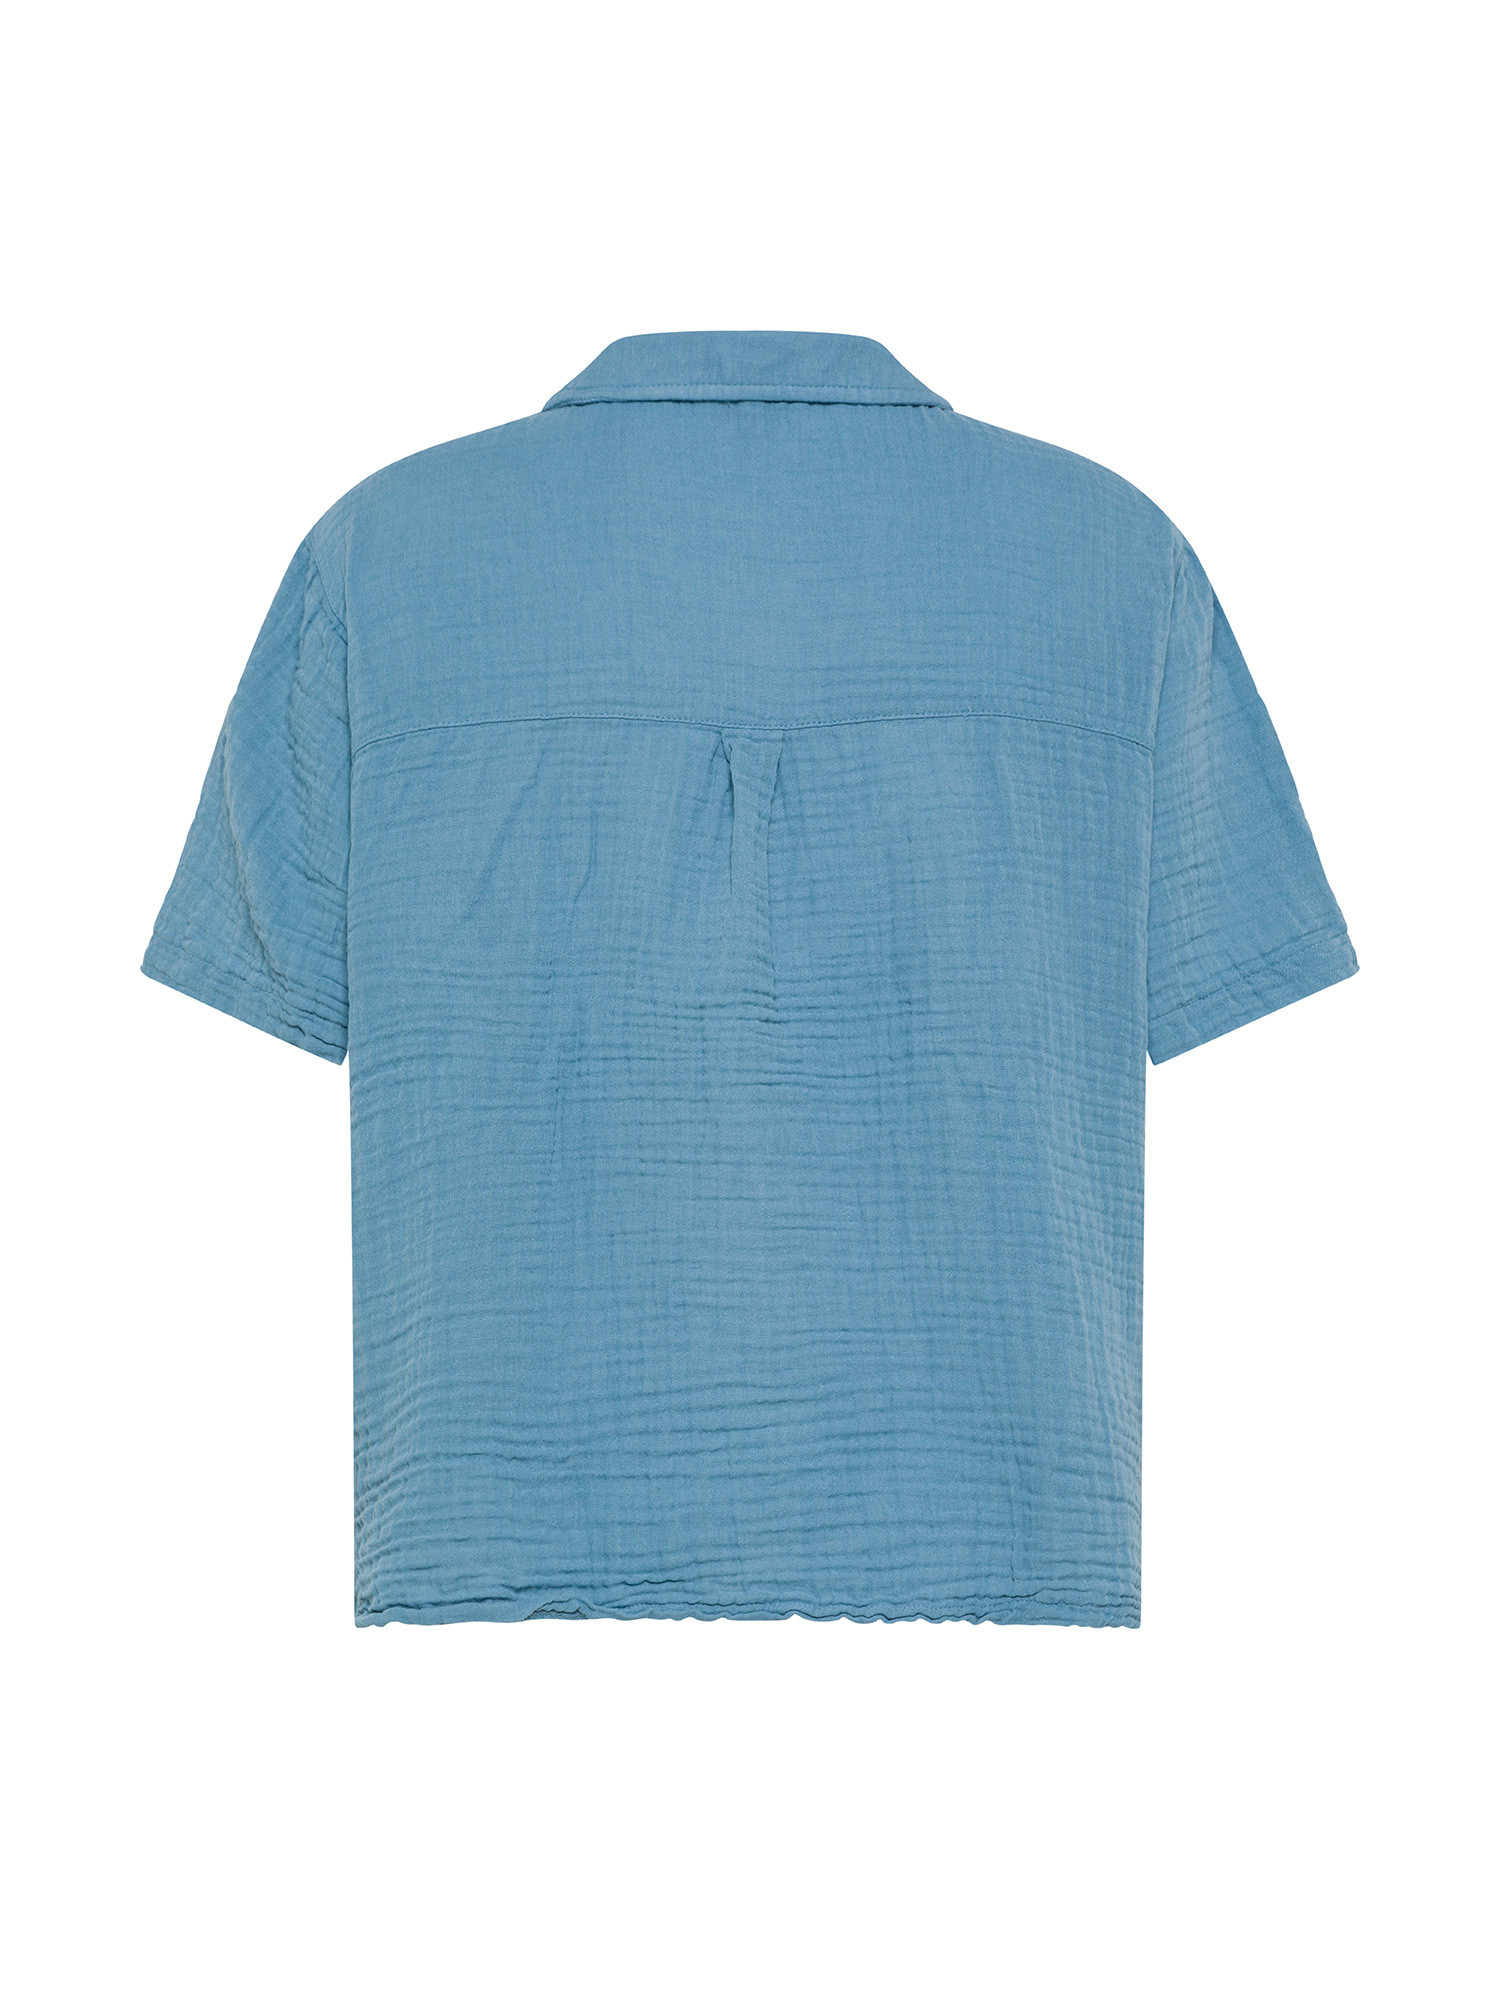 Camicia in mussola di cotone mezza manica., Azzurro, large image number 1